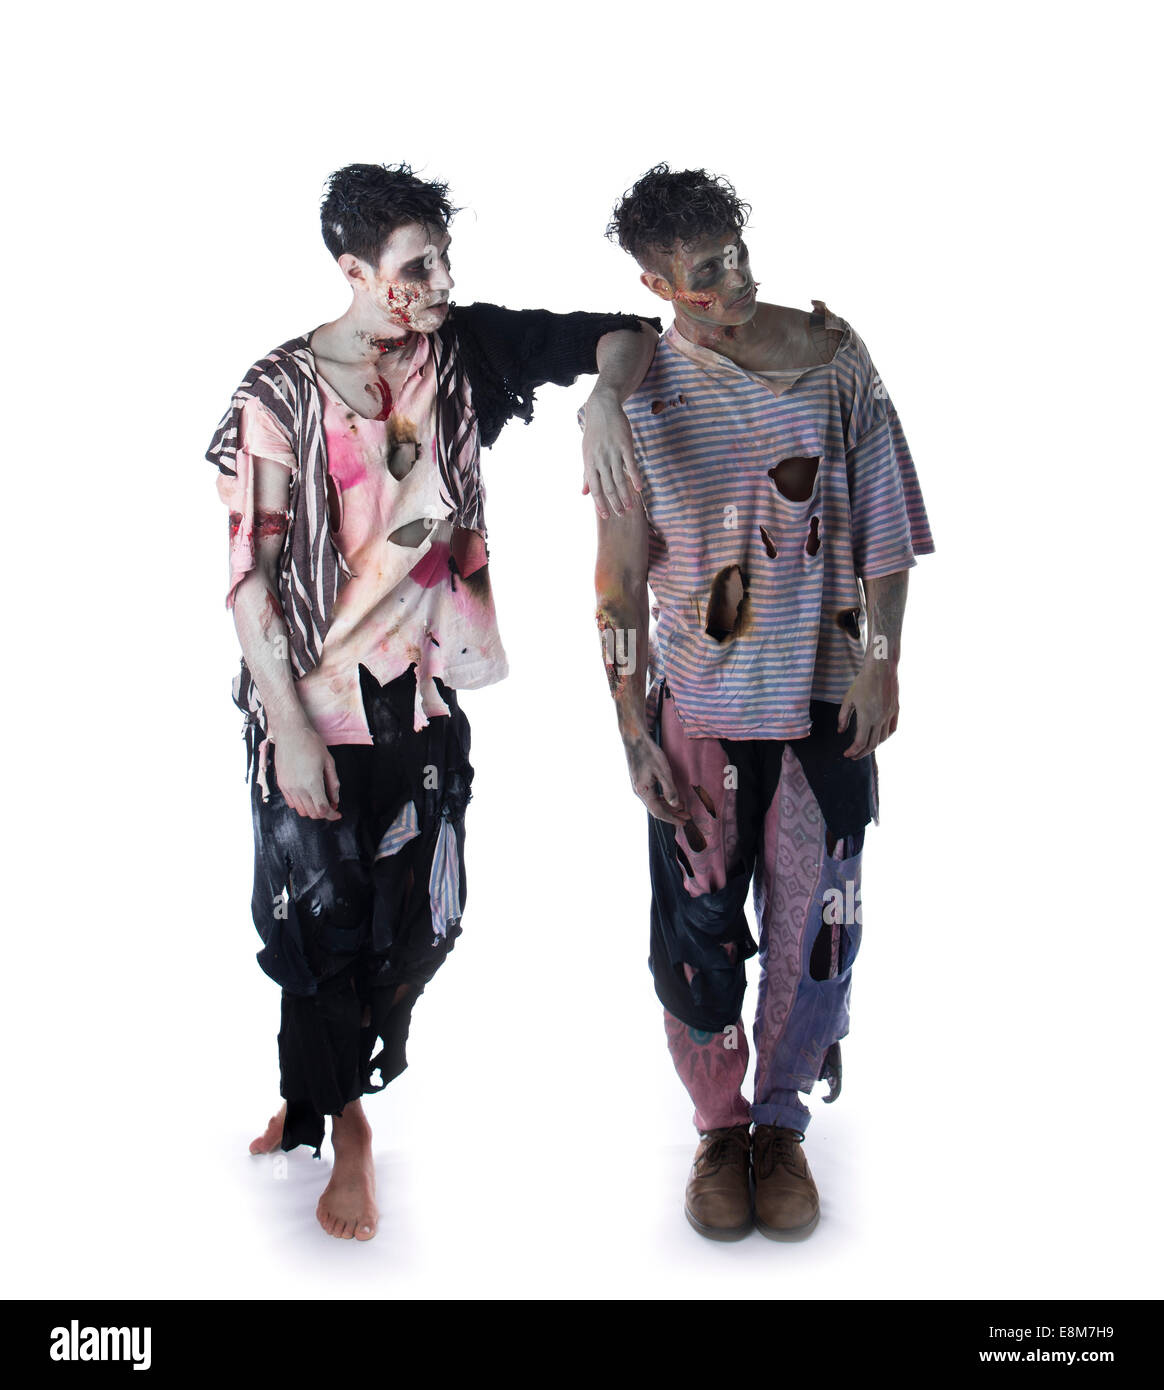 Zwei männliche Zombies auf weißem Hintergrund stehen, Ganzkörper erschossen, wegschauen. Halloween-Thema Stockfoto